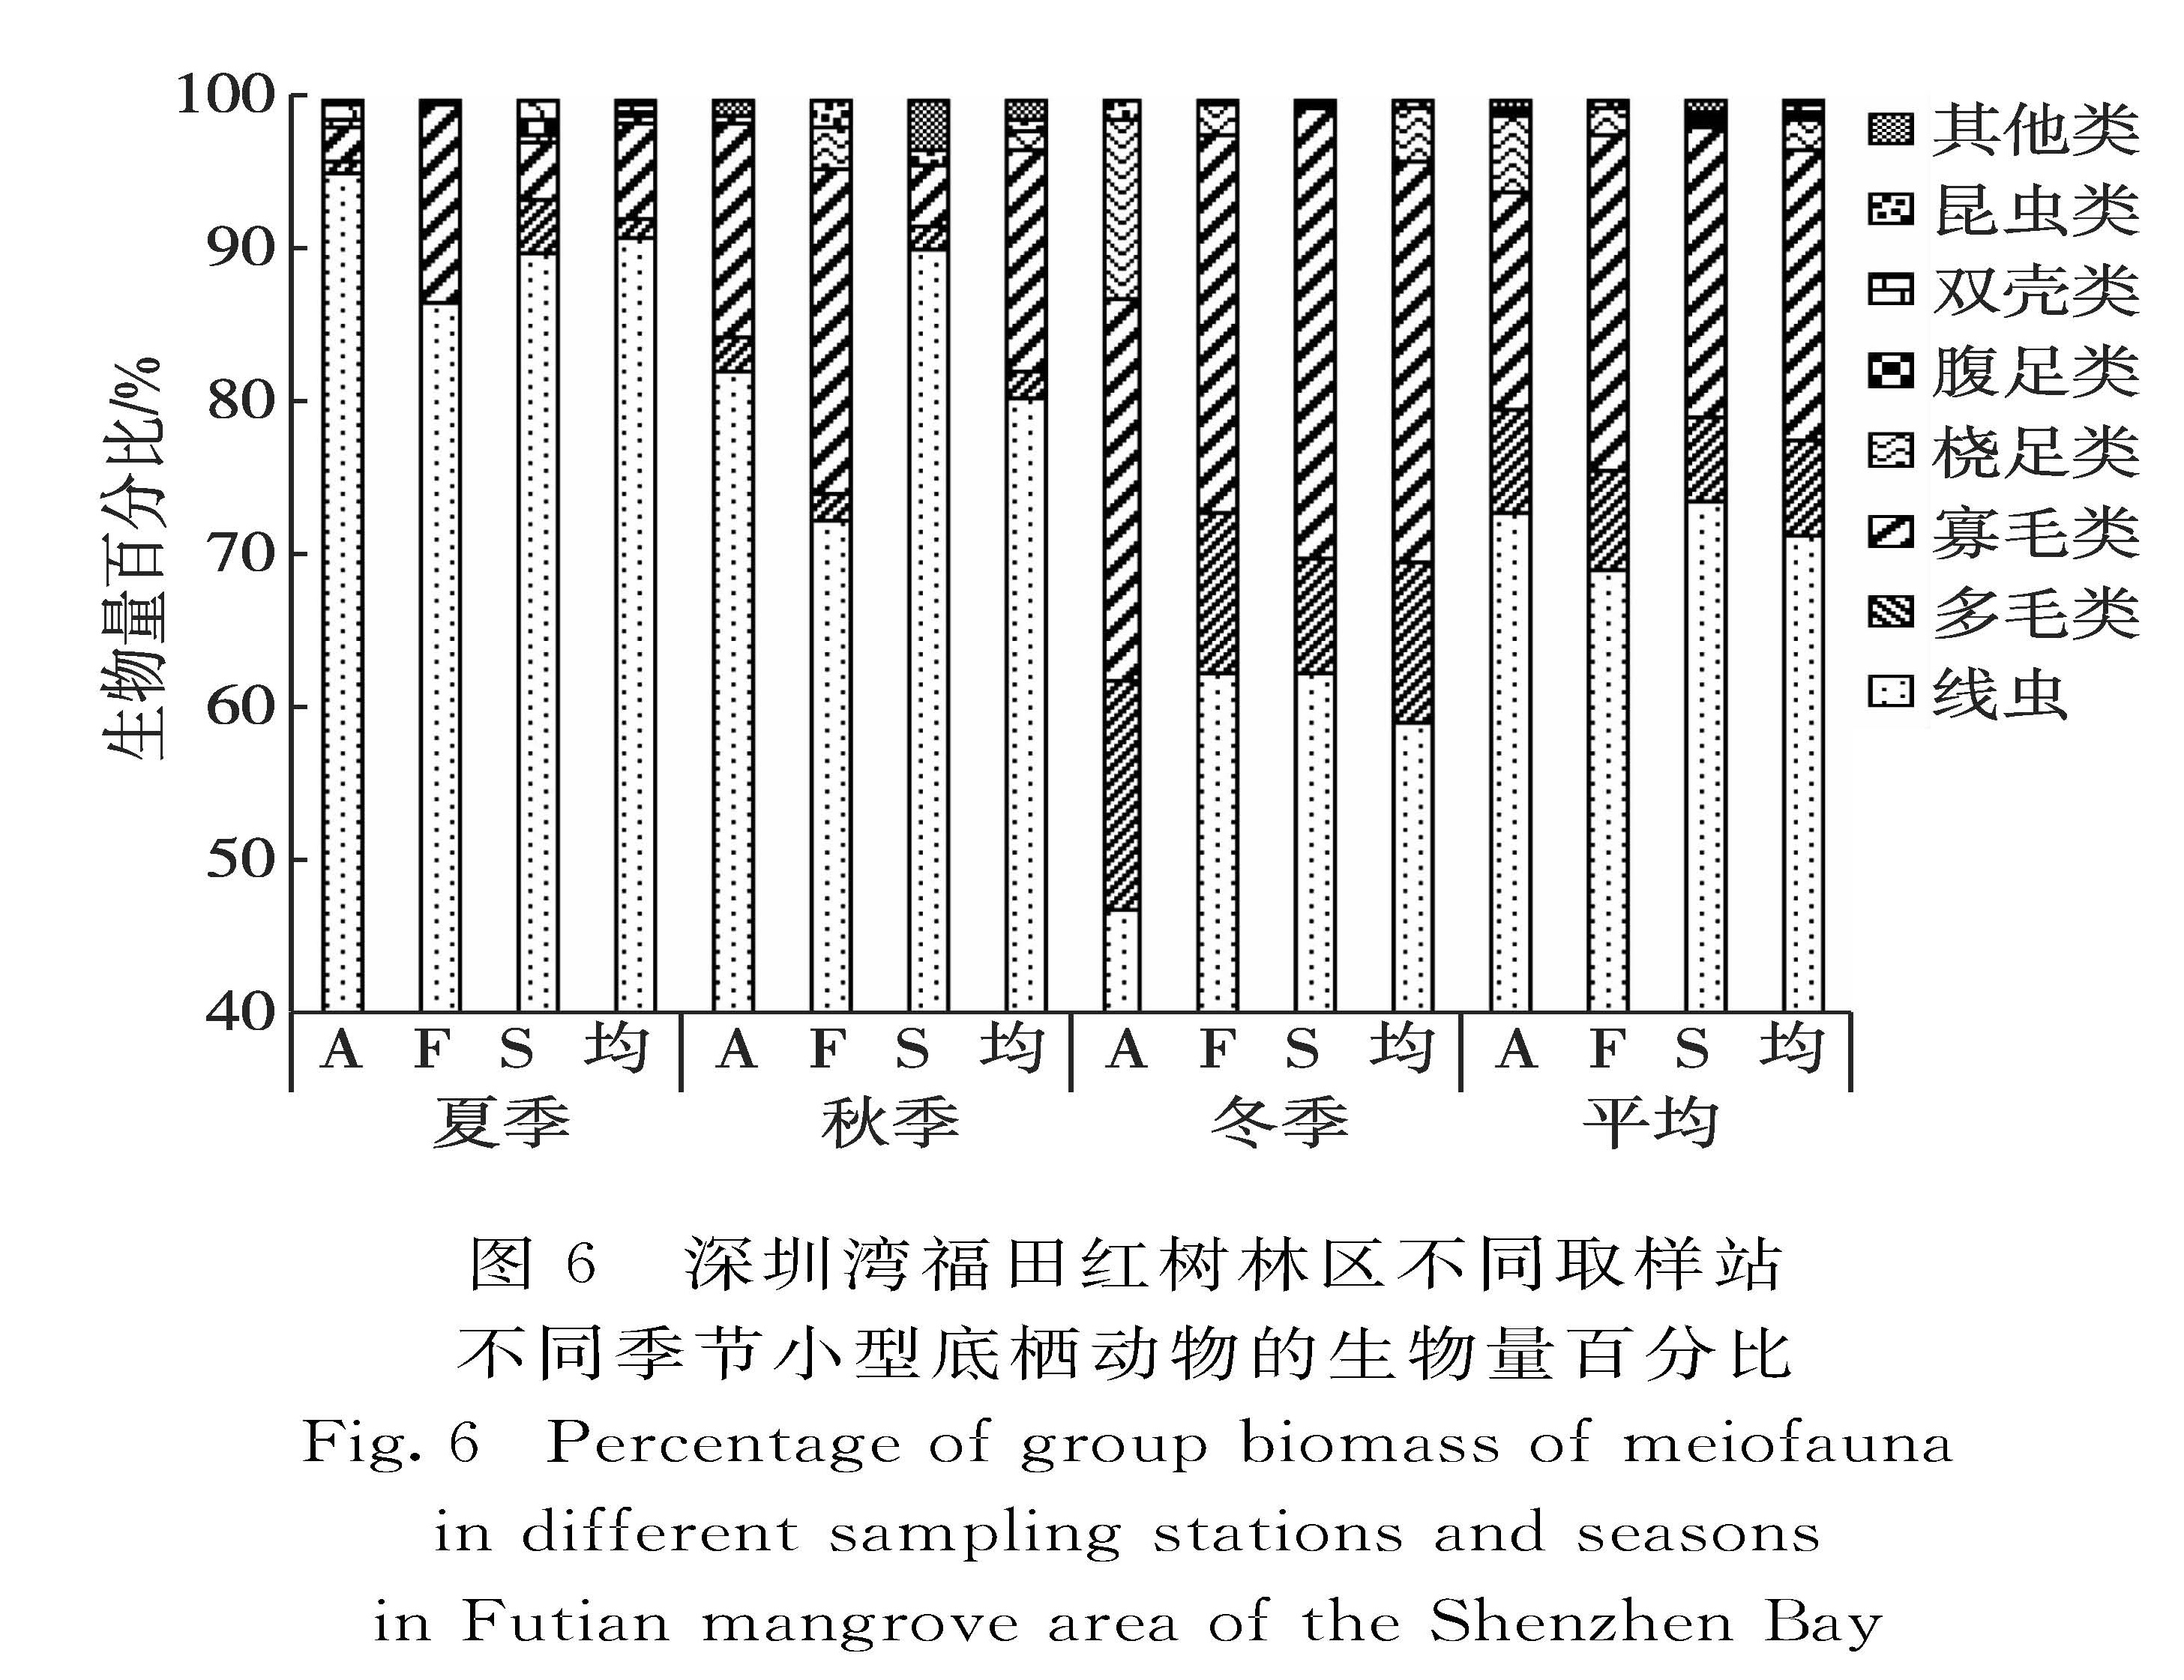 图6 深圳湾福田红树林区不同取样站不同季节小型底栖动物的生物量百分比<br/>Fig.6 Percentage of group biomass of meiofauna in different sampling stations and seasons in Futian mangrove area of the Shenzhen Bay